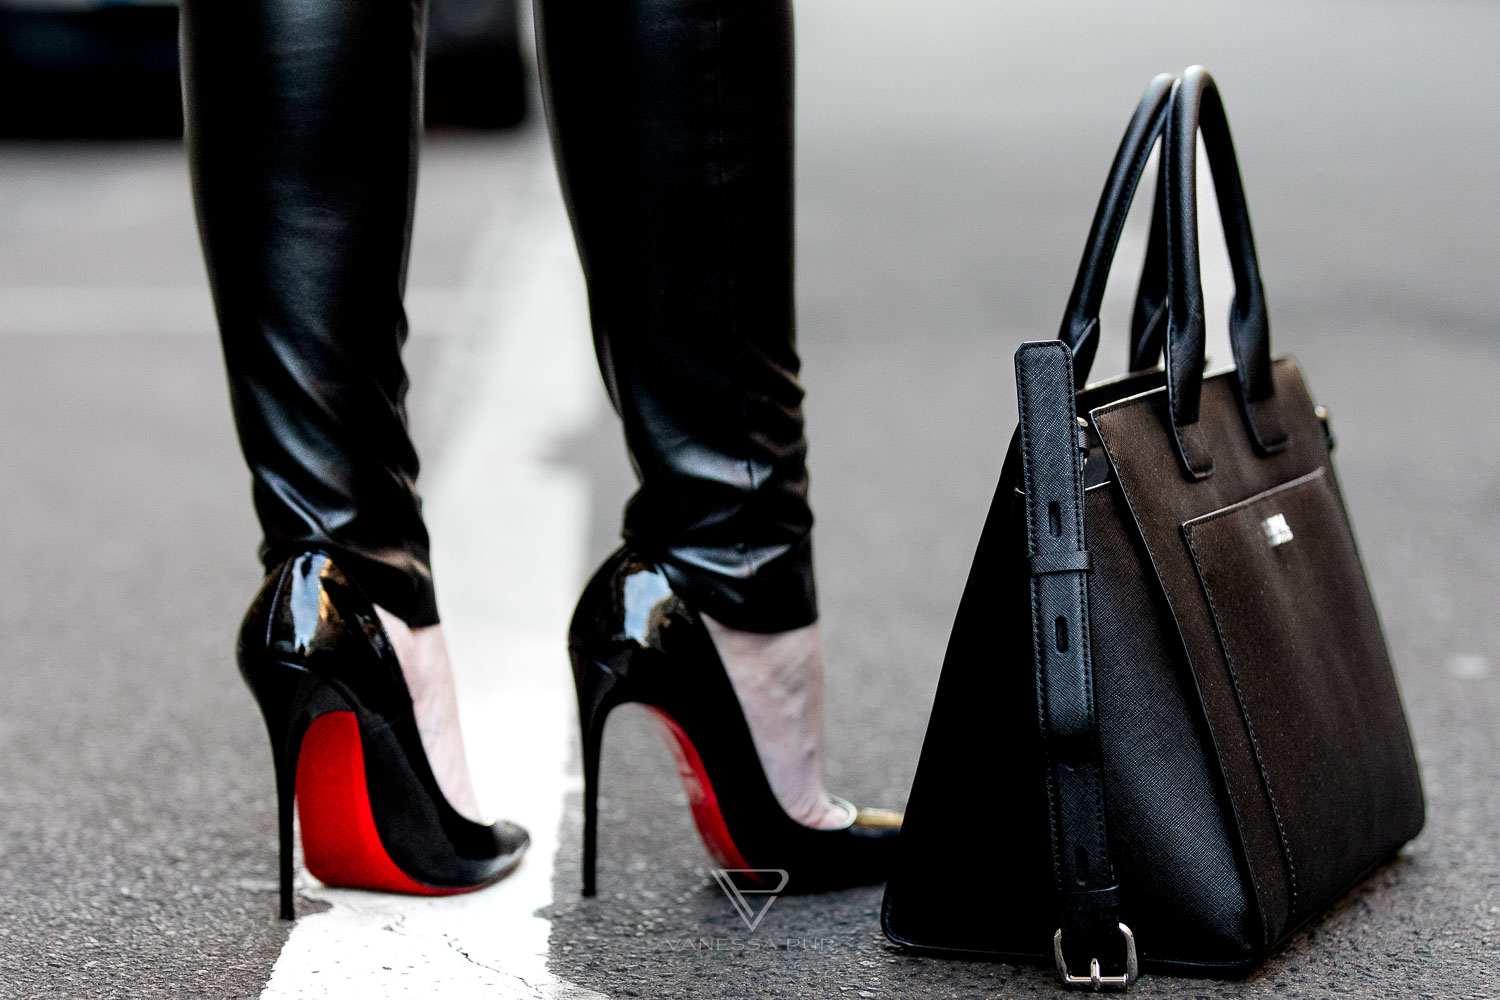 Louboutin High Heels kaufen - was sollte ich vorher wissen? Fashion Blog Hamburg - Designer Pumps Christian Louboutin - Modebloggerin und Luxusblog Vanessa Pur 
 - VANESSA PUR - YouTube Channel - Patreon Girl - Instagram - Feminine elegant fashion looks always with high heels